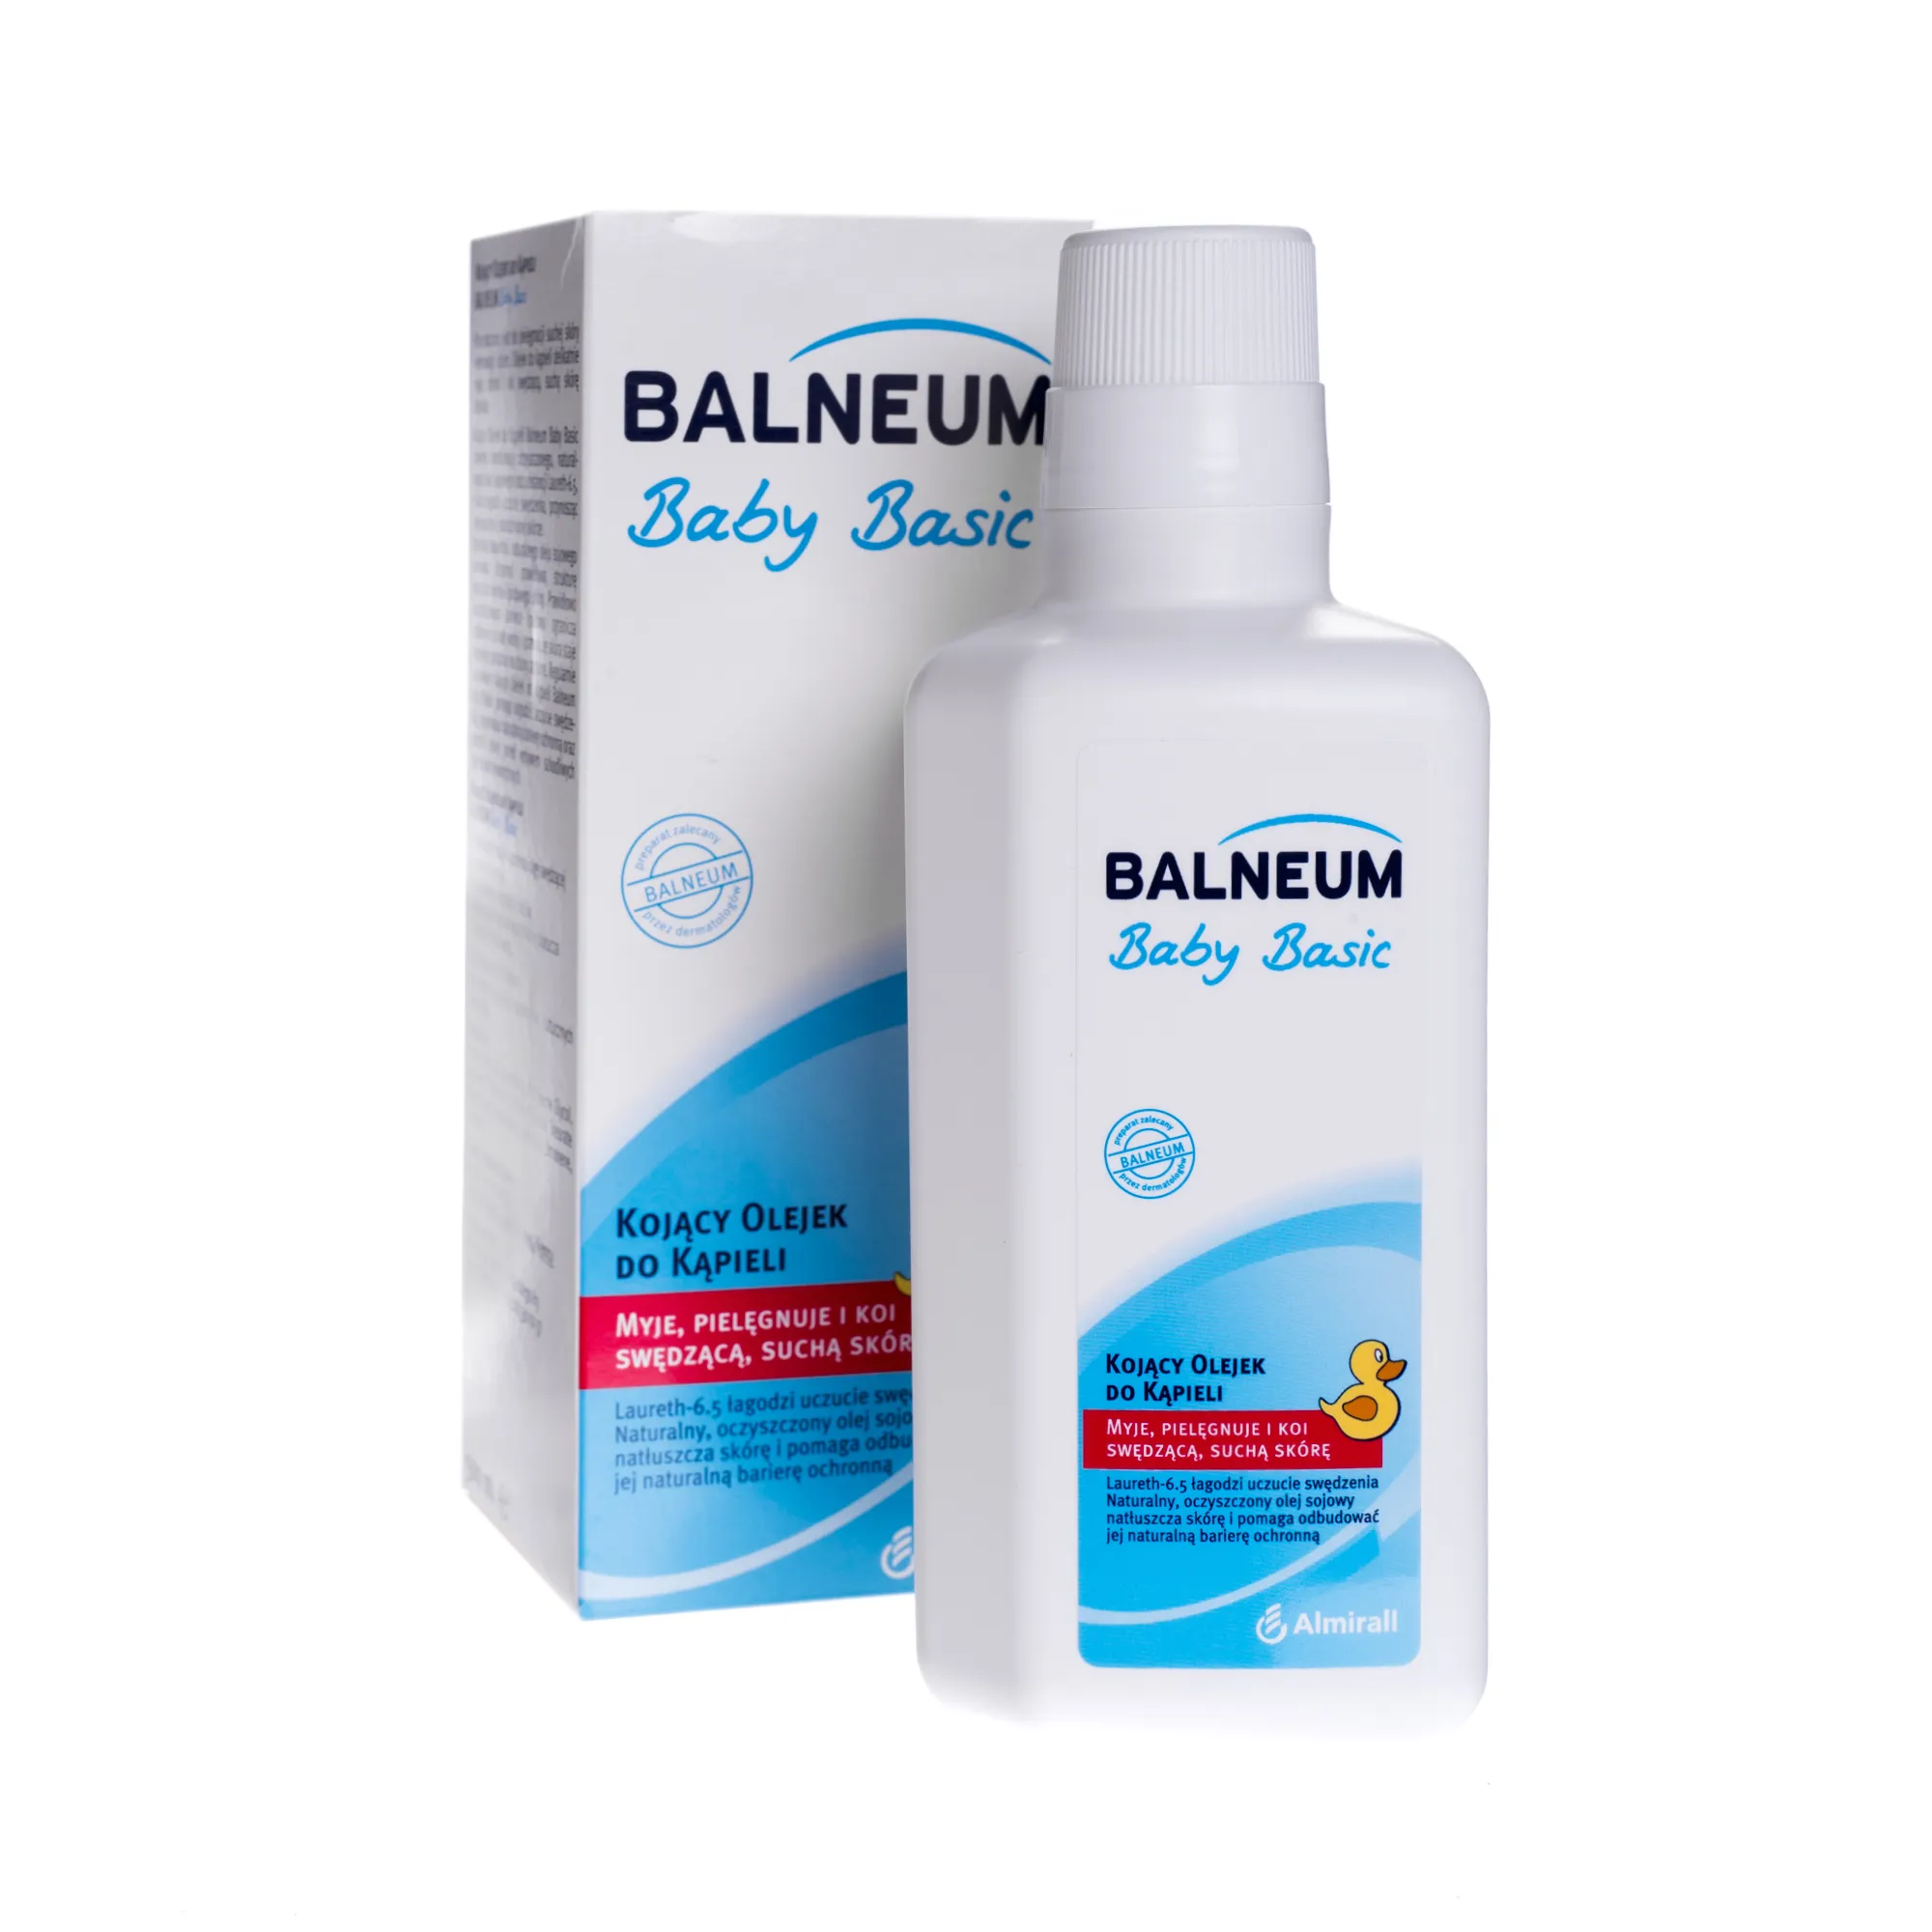 Balneum Baby Basic, kojący olejek do kąpieli, pielęgnuje i koi swędzącą, suchą skórę, 500 ml 